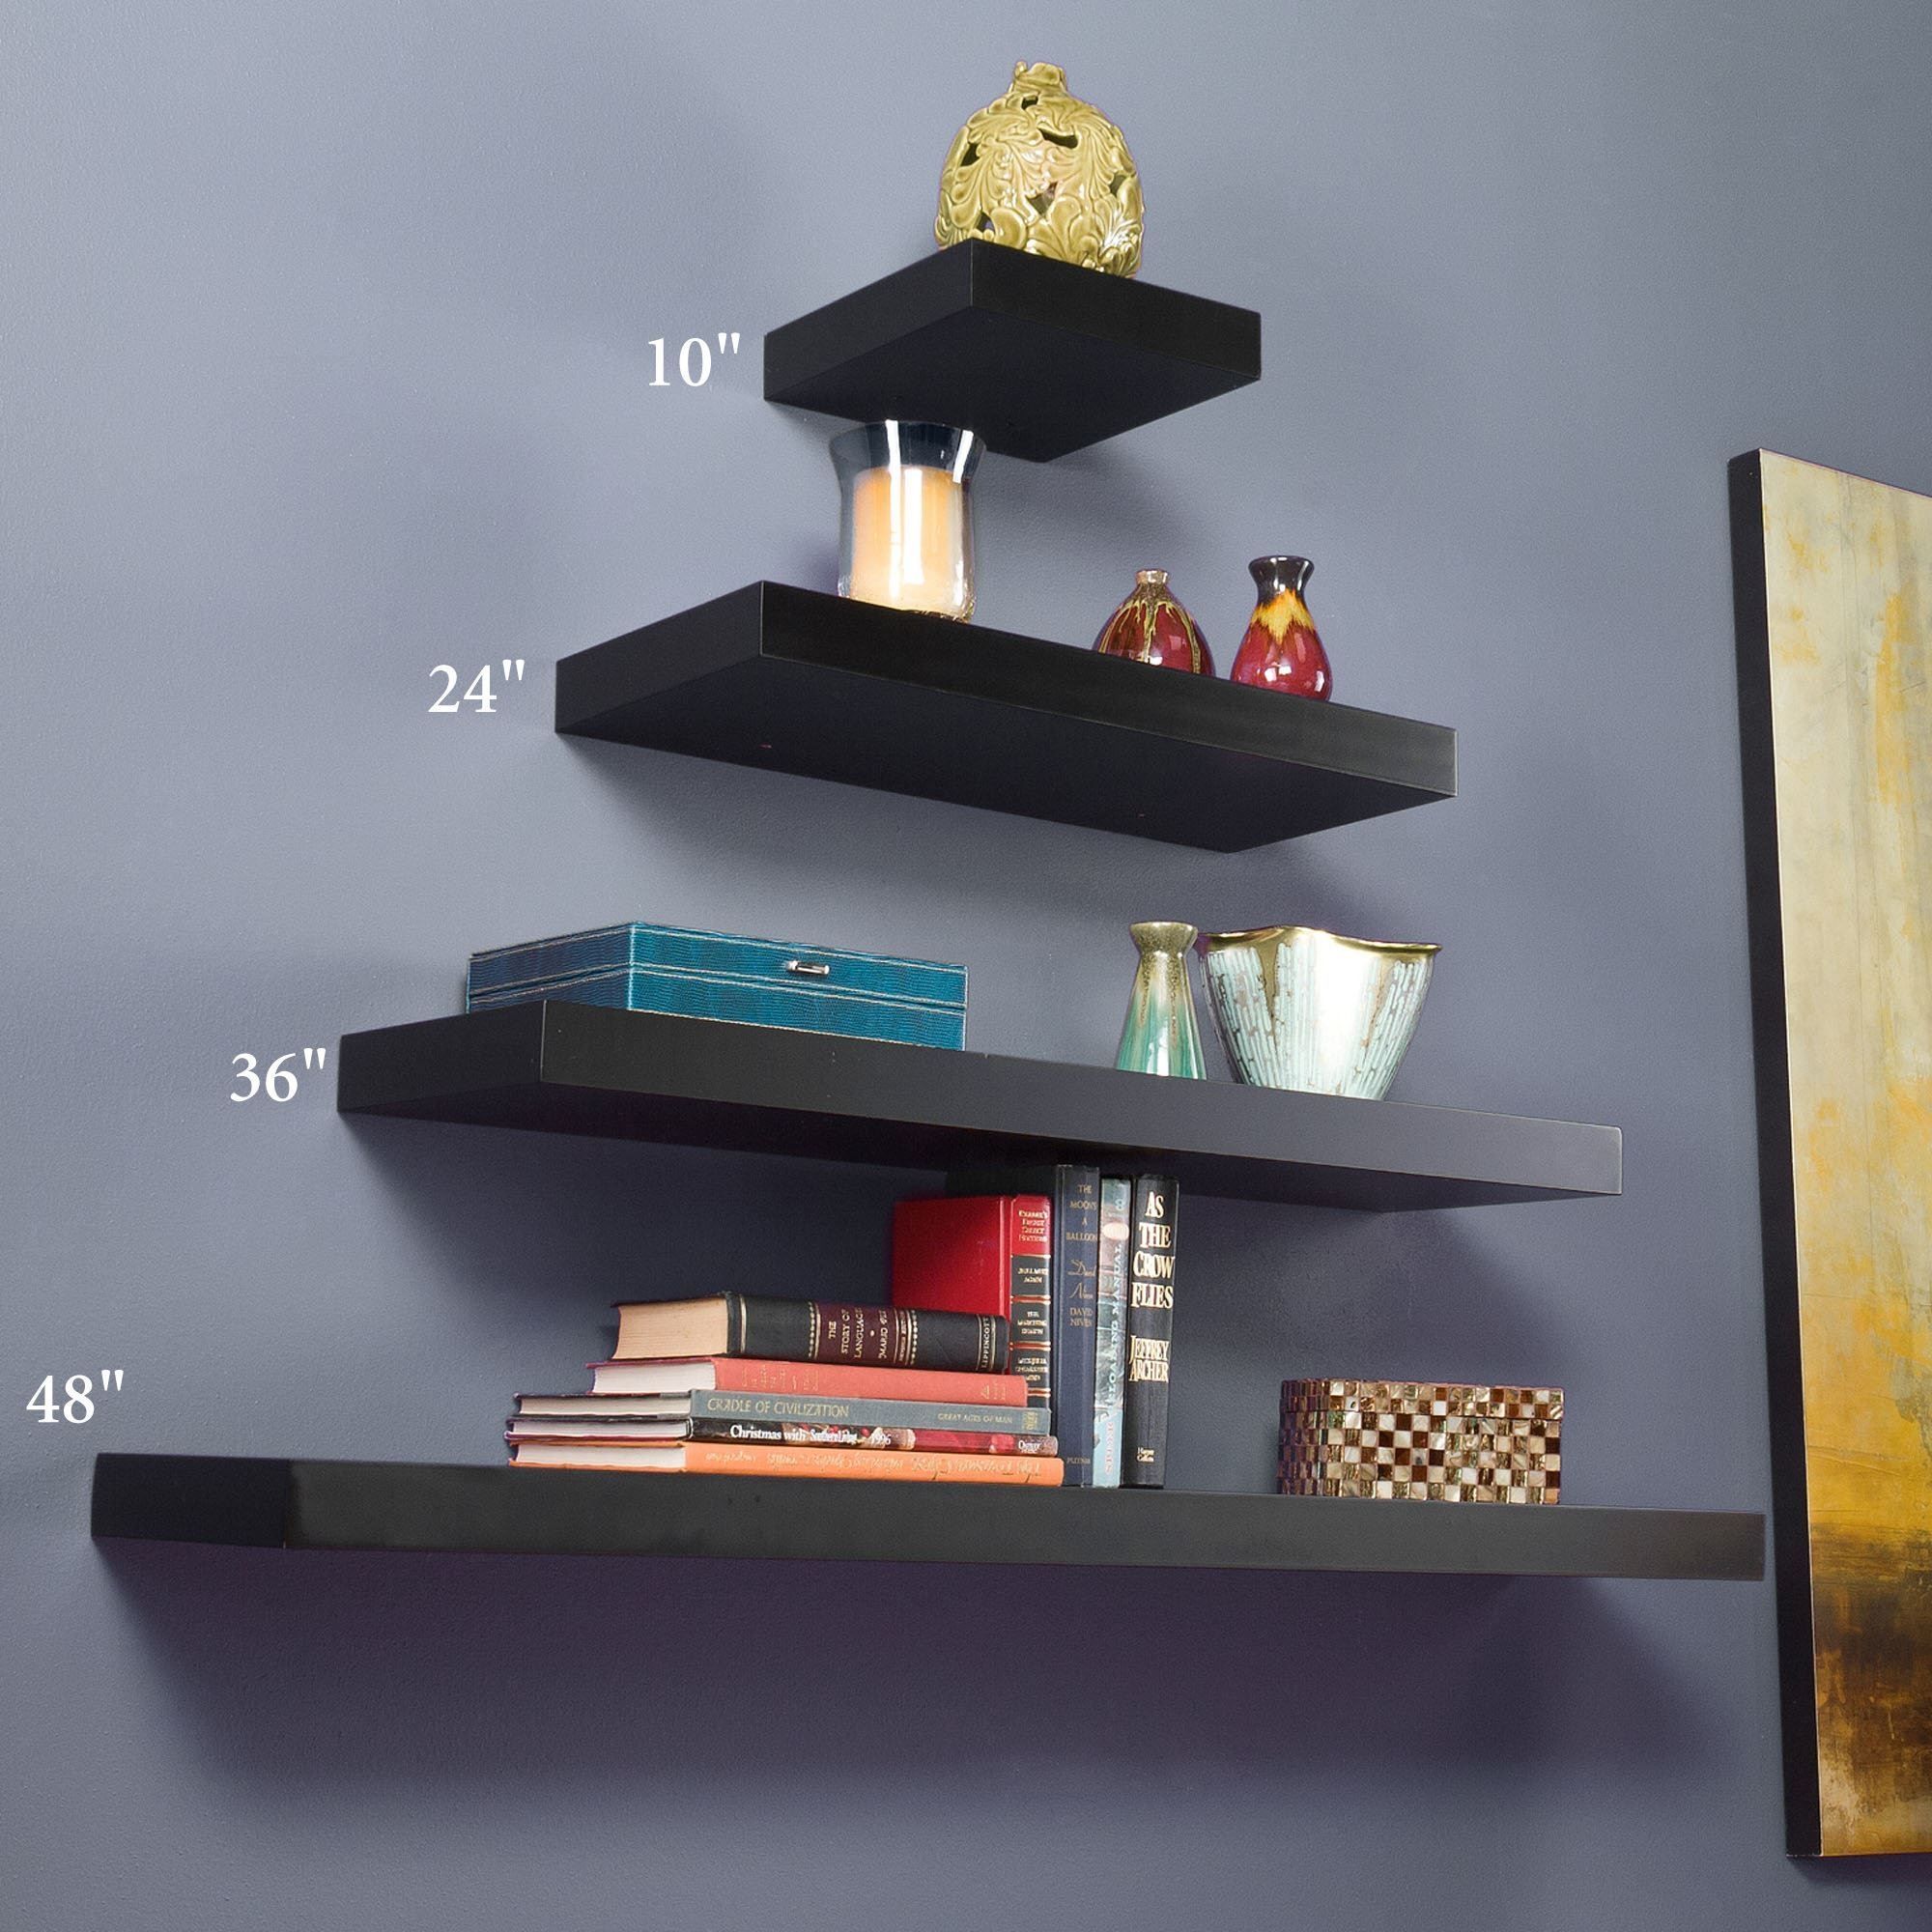 15 Best Ideas Floating Wall Shelves Shelf Ideas